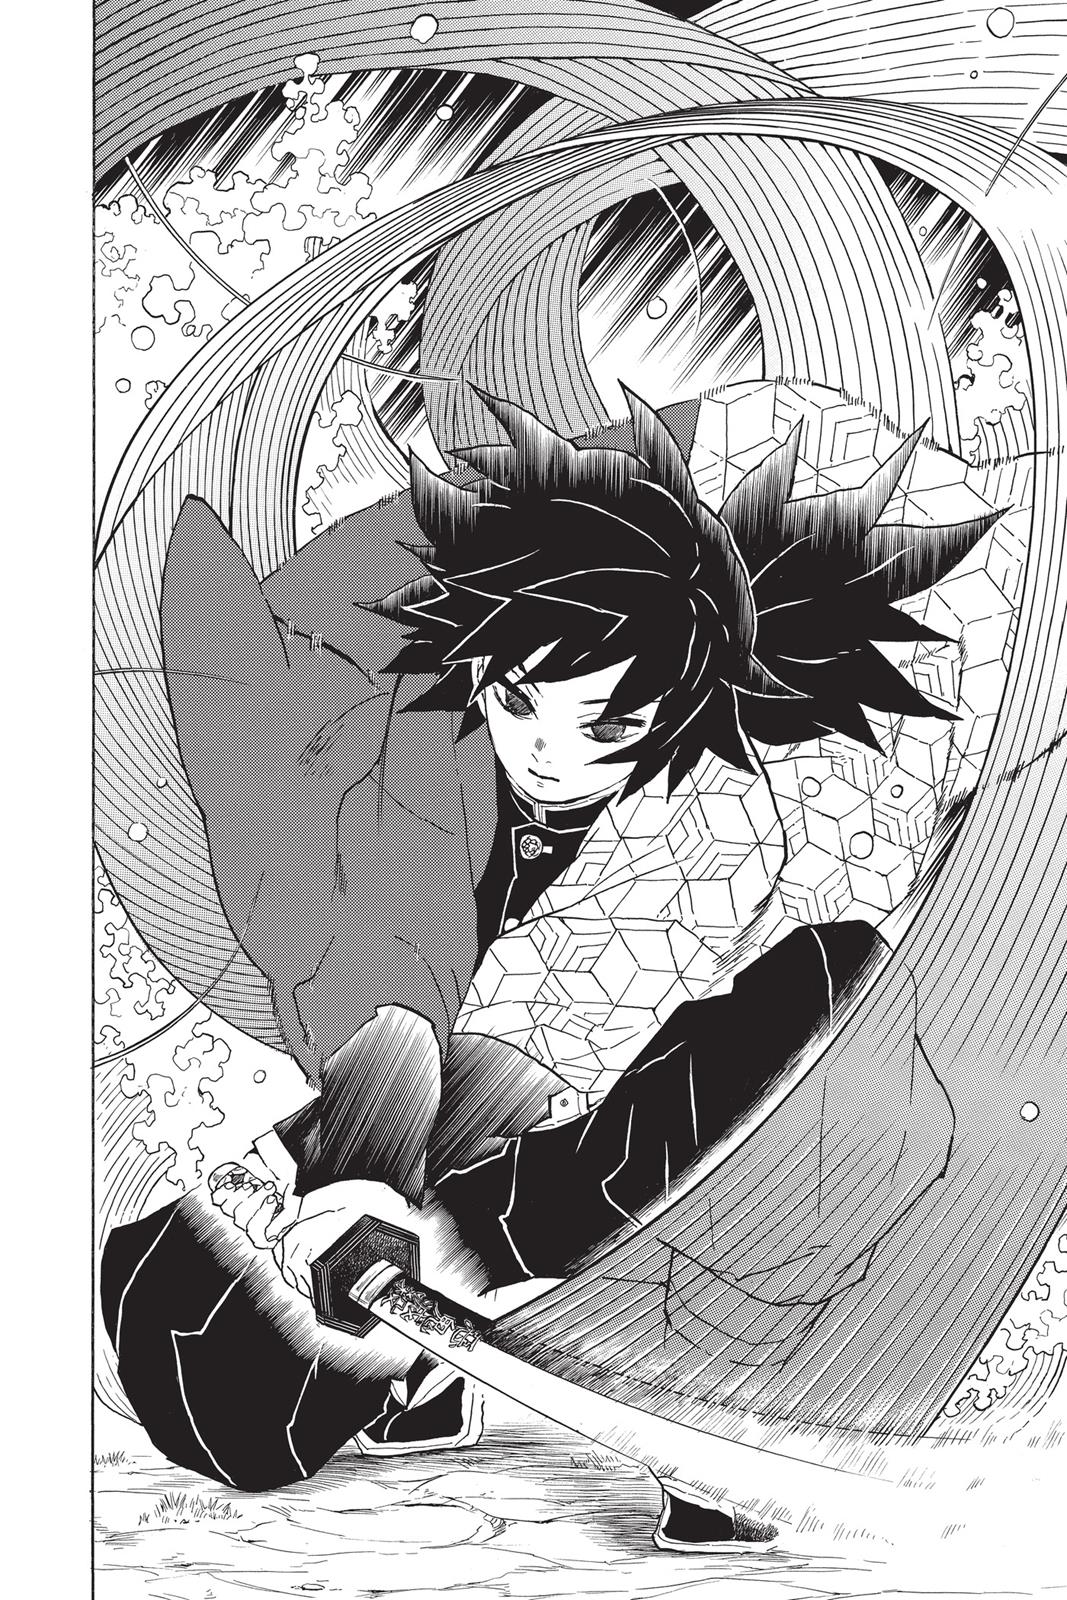 Demon Slayer Manga Manga Chapter - 42 - image 9